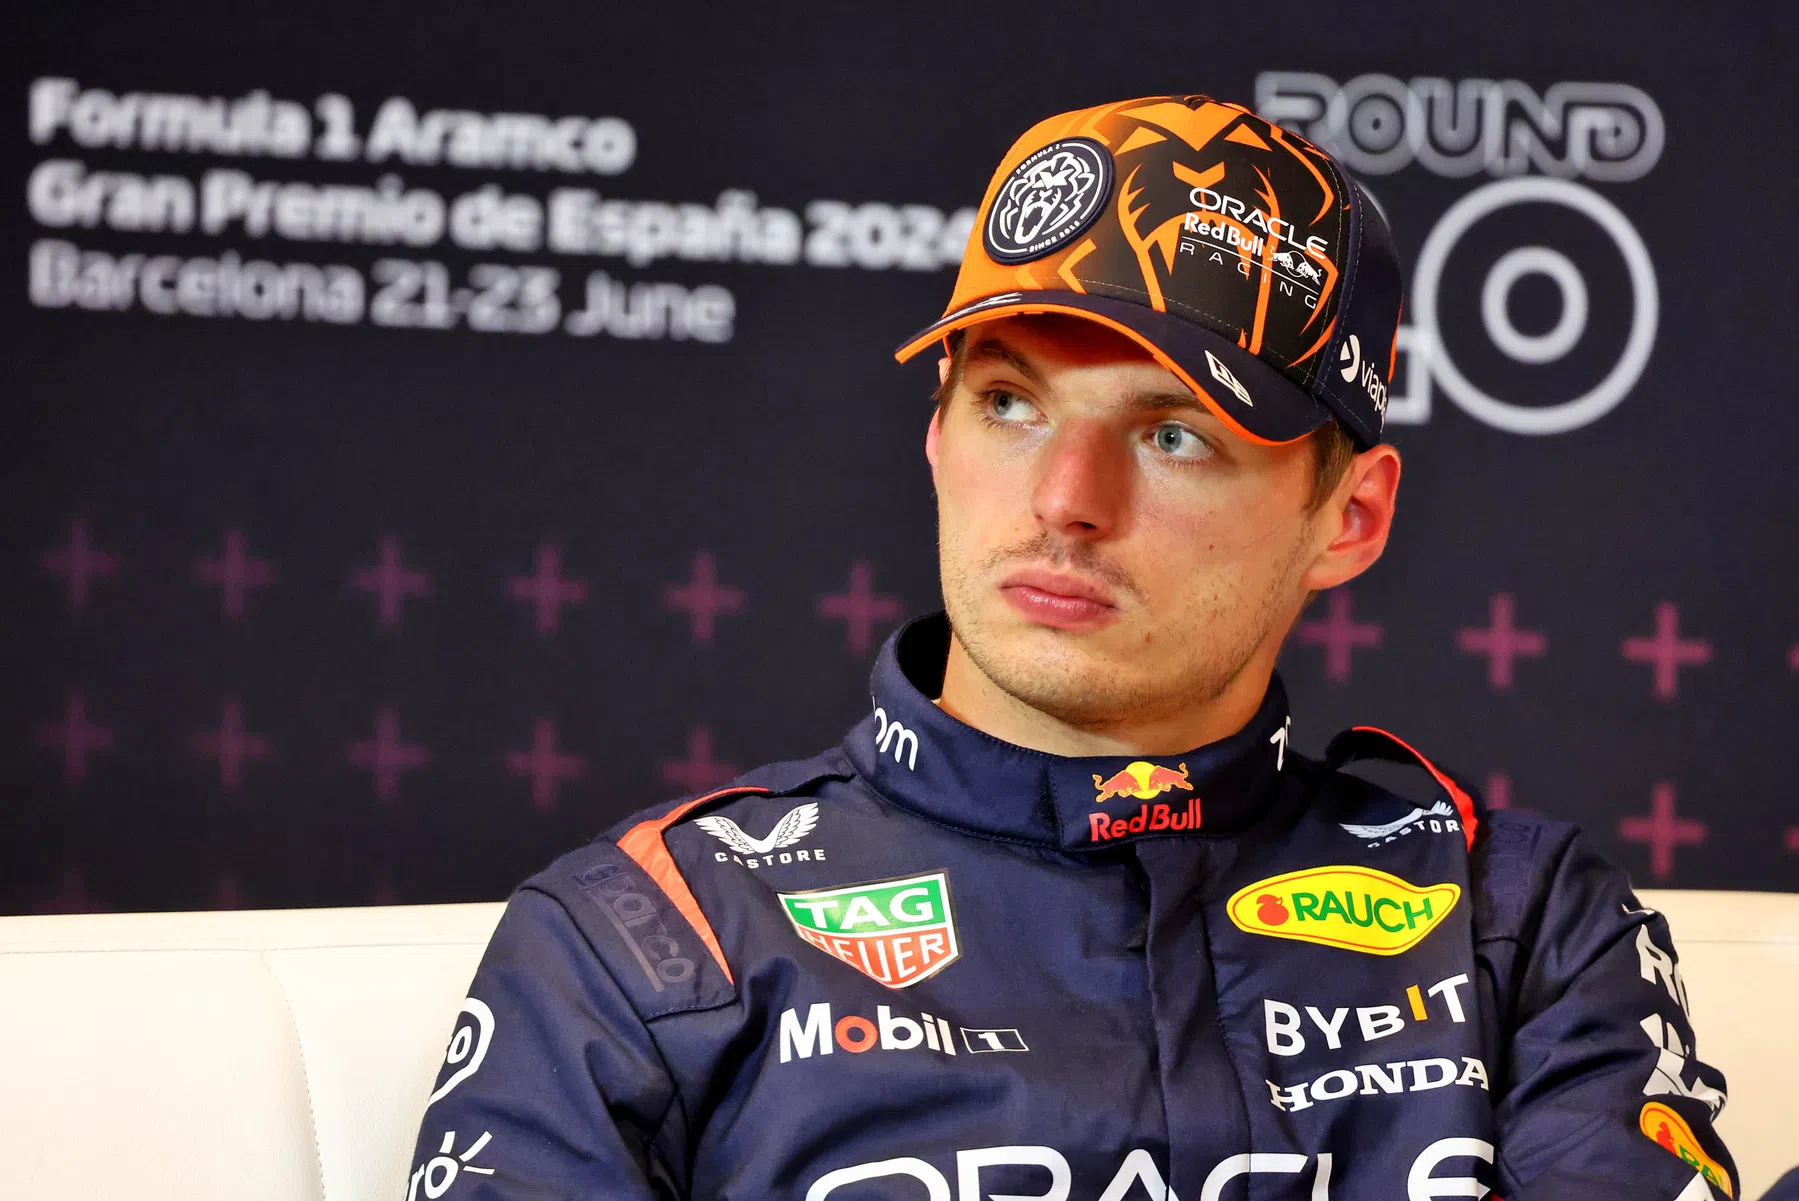 Análise: Verstappen mostra preocupação com o desempenho há meses